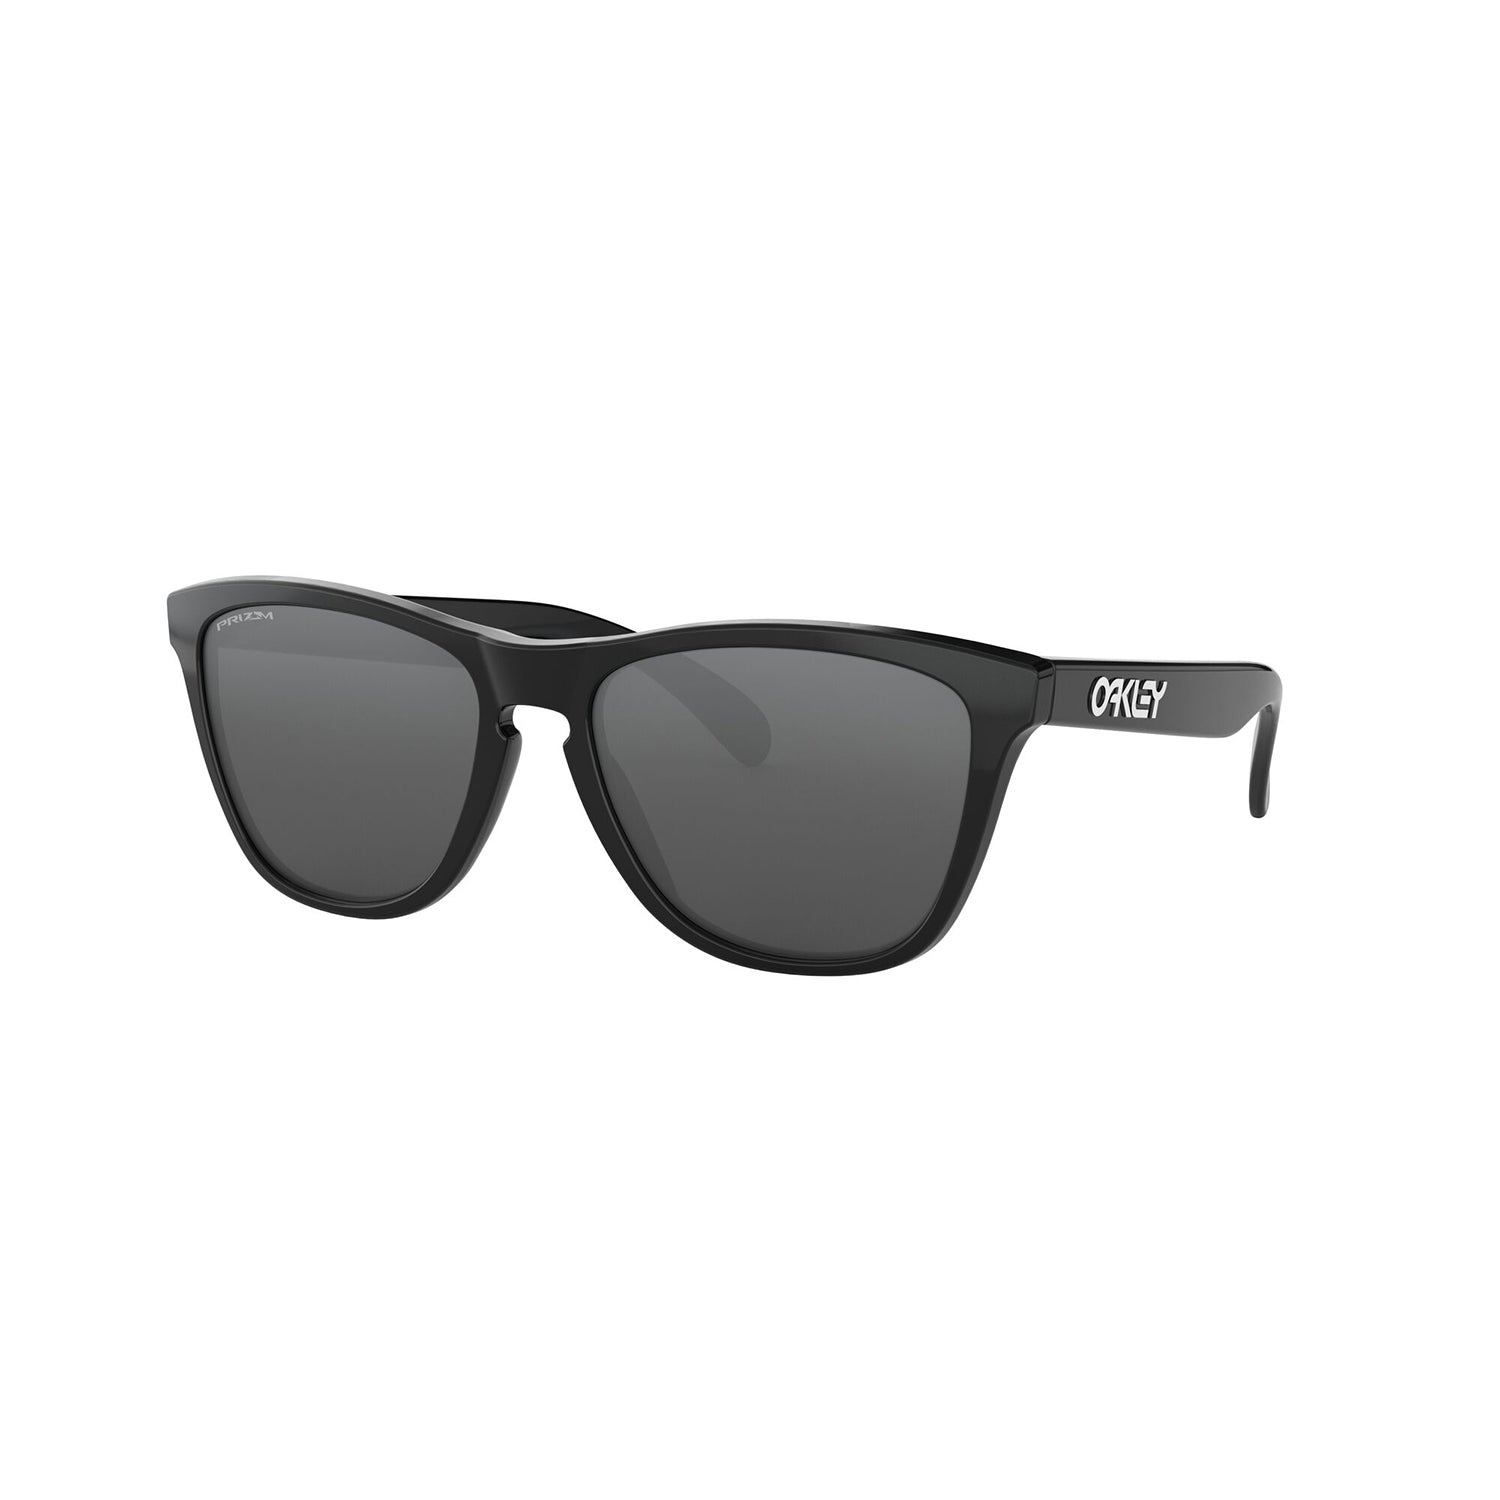 Oakley Frogskins Sunglasses Adult (Polished Black) Prizm Black Lens